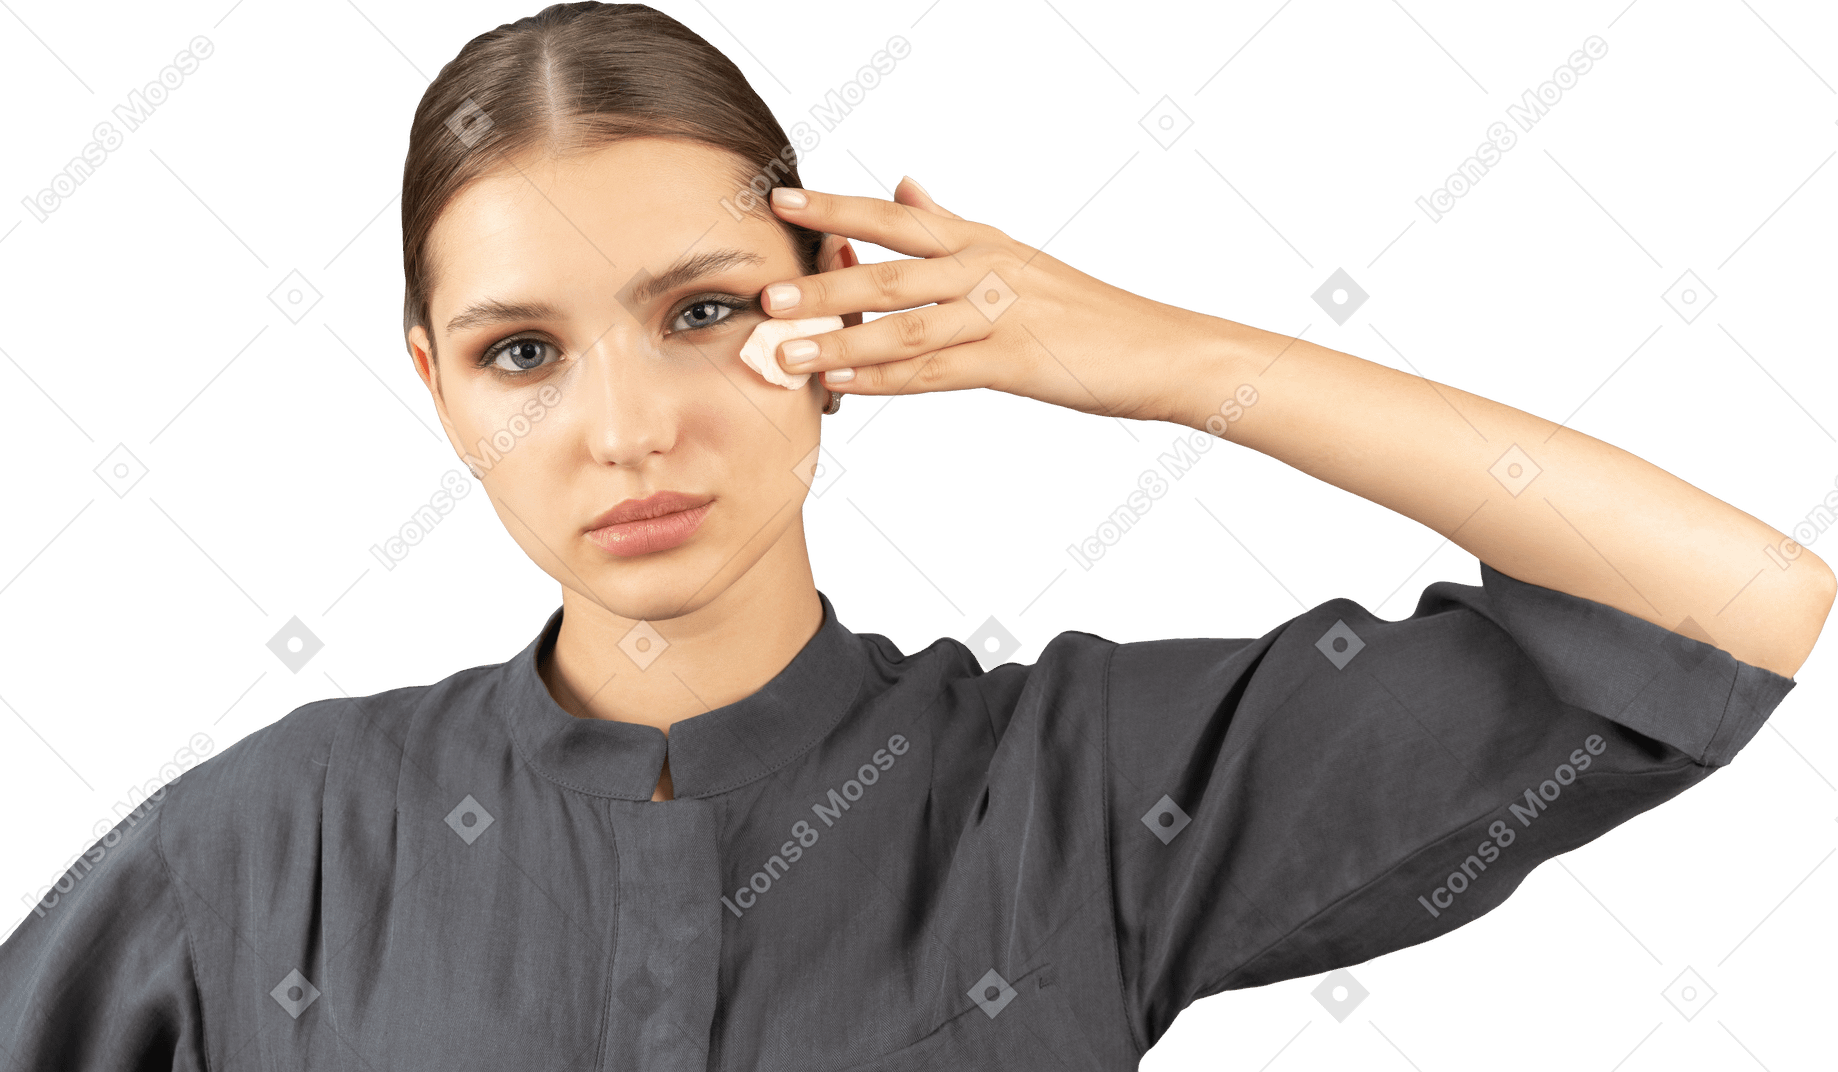 Vista frontal de uma jovem com um macacão removendo a maquiagem